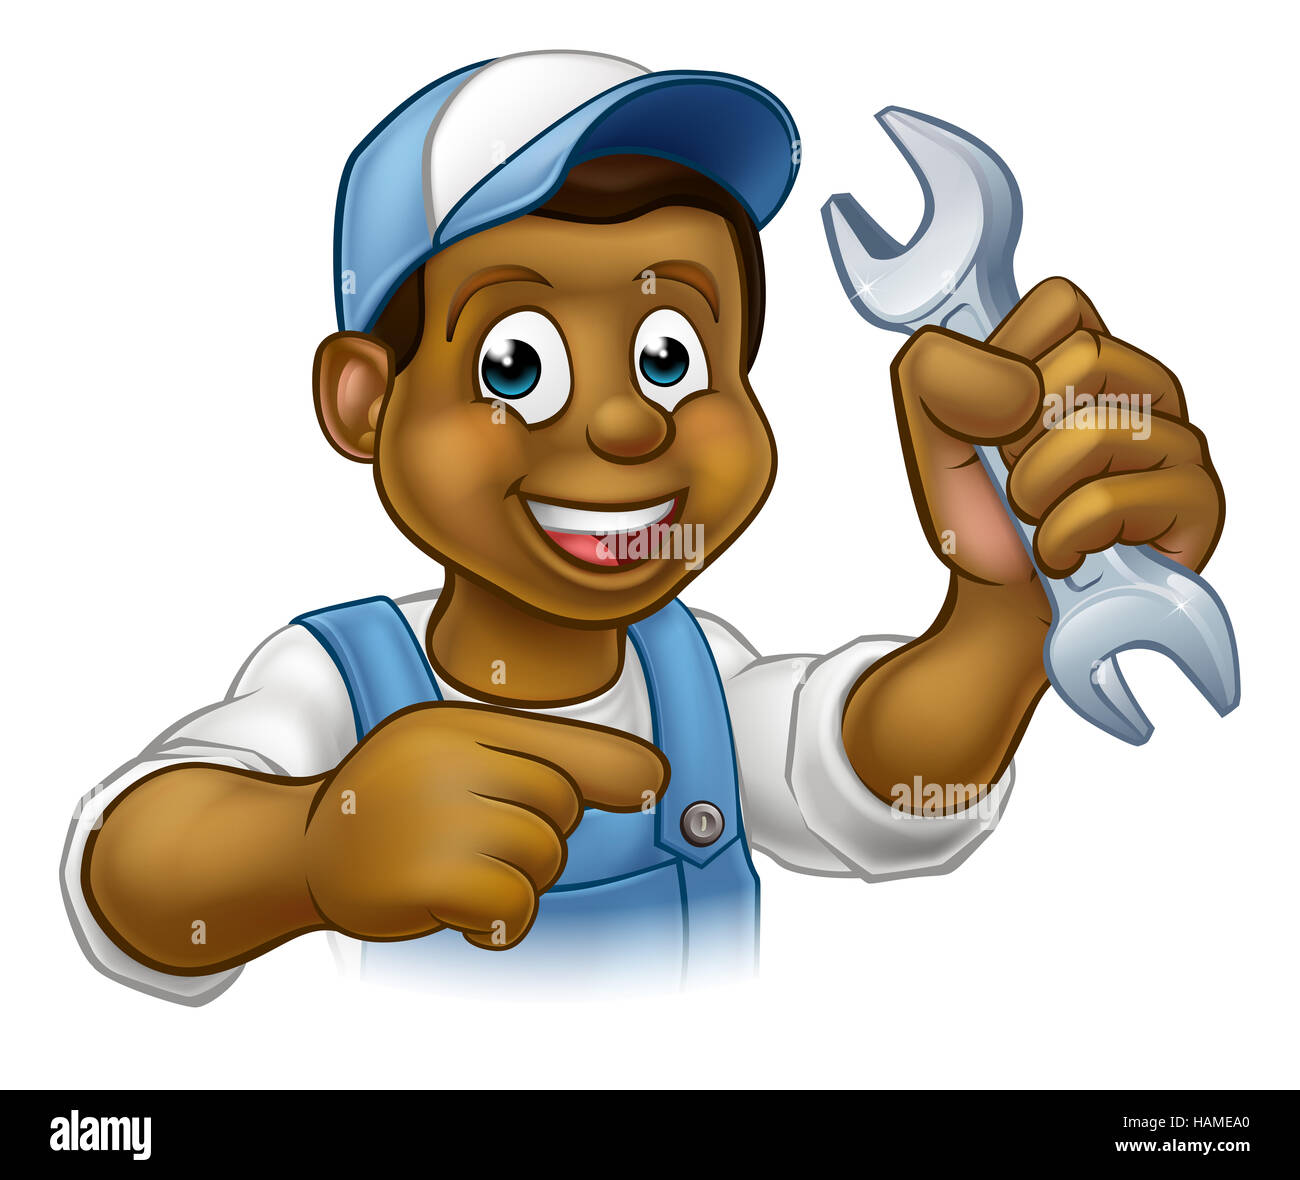 Ein Klempner oder Mechaniker Handwerker Cartoon-Figur hält einen Schraubenschlüssel und zeigen Stockfoto